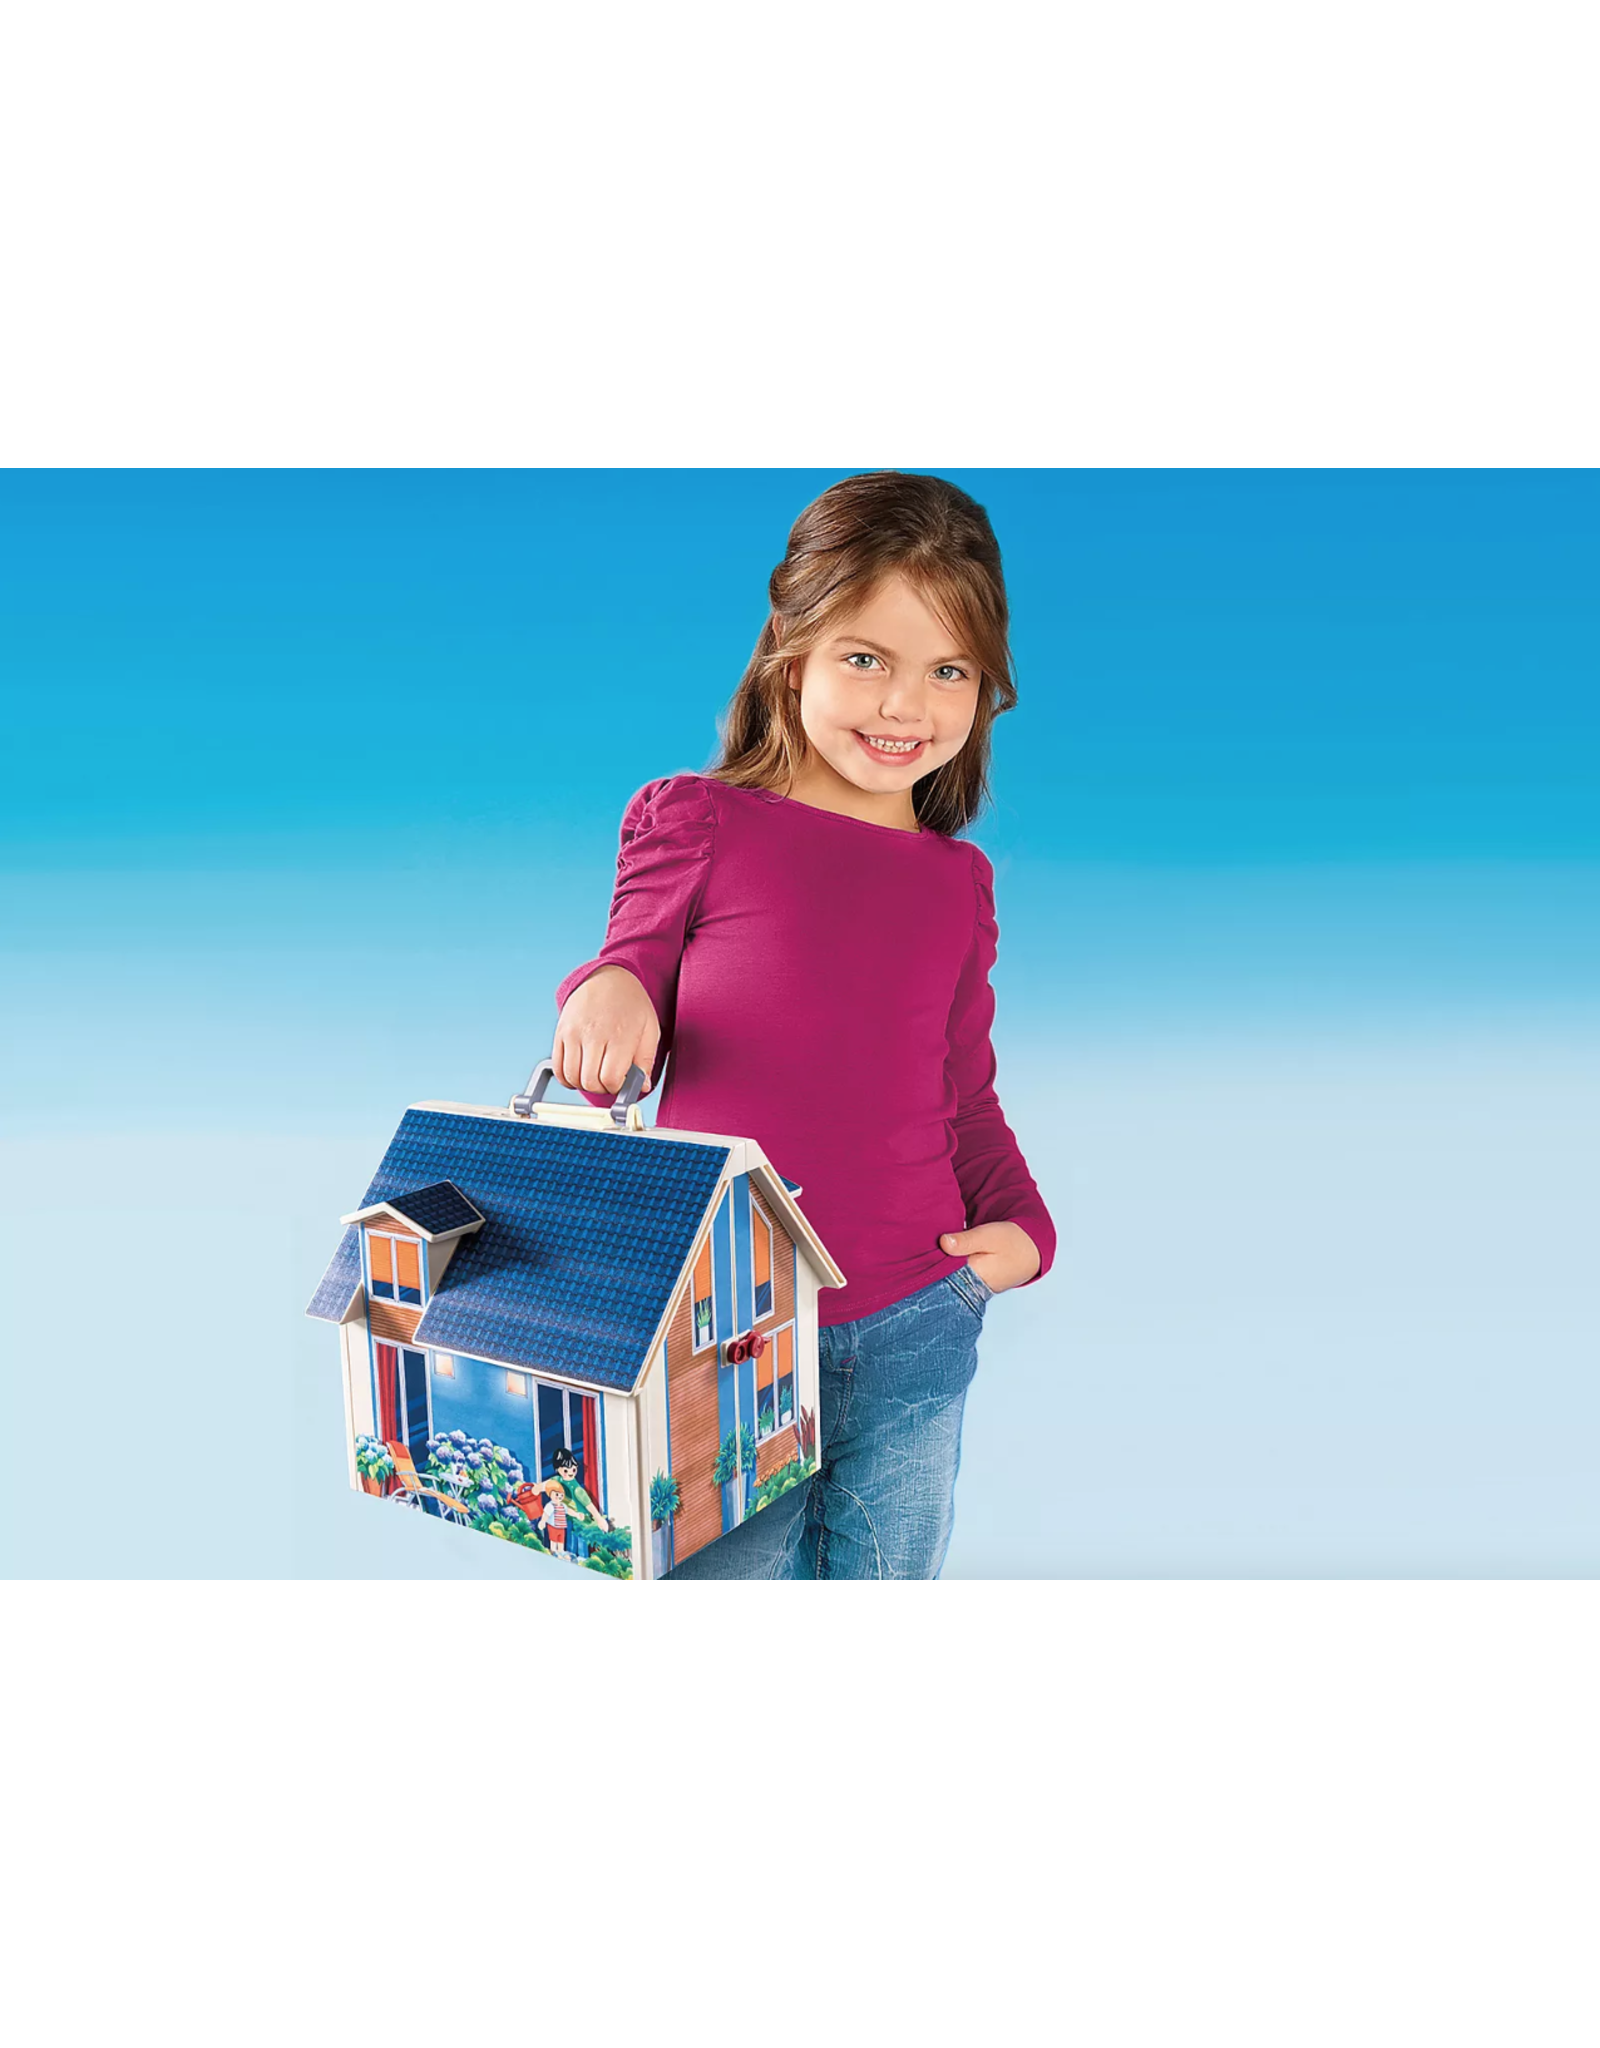 Playmobil Take Along Dollhouse